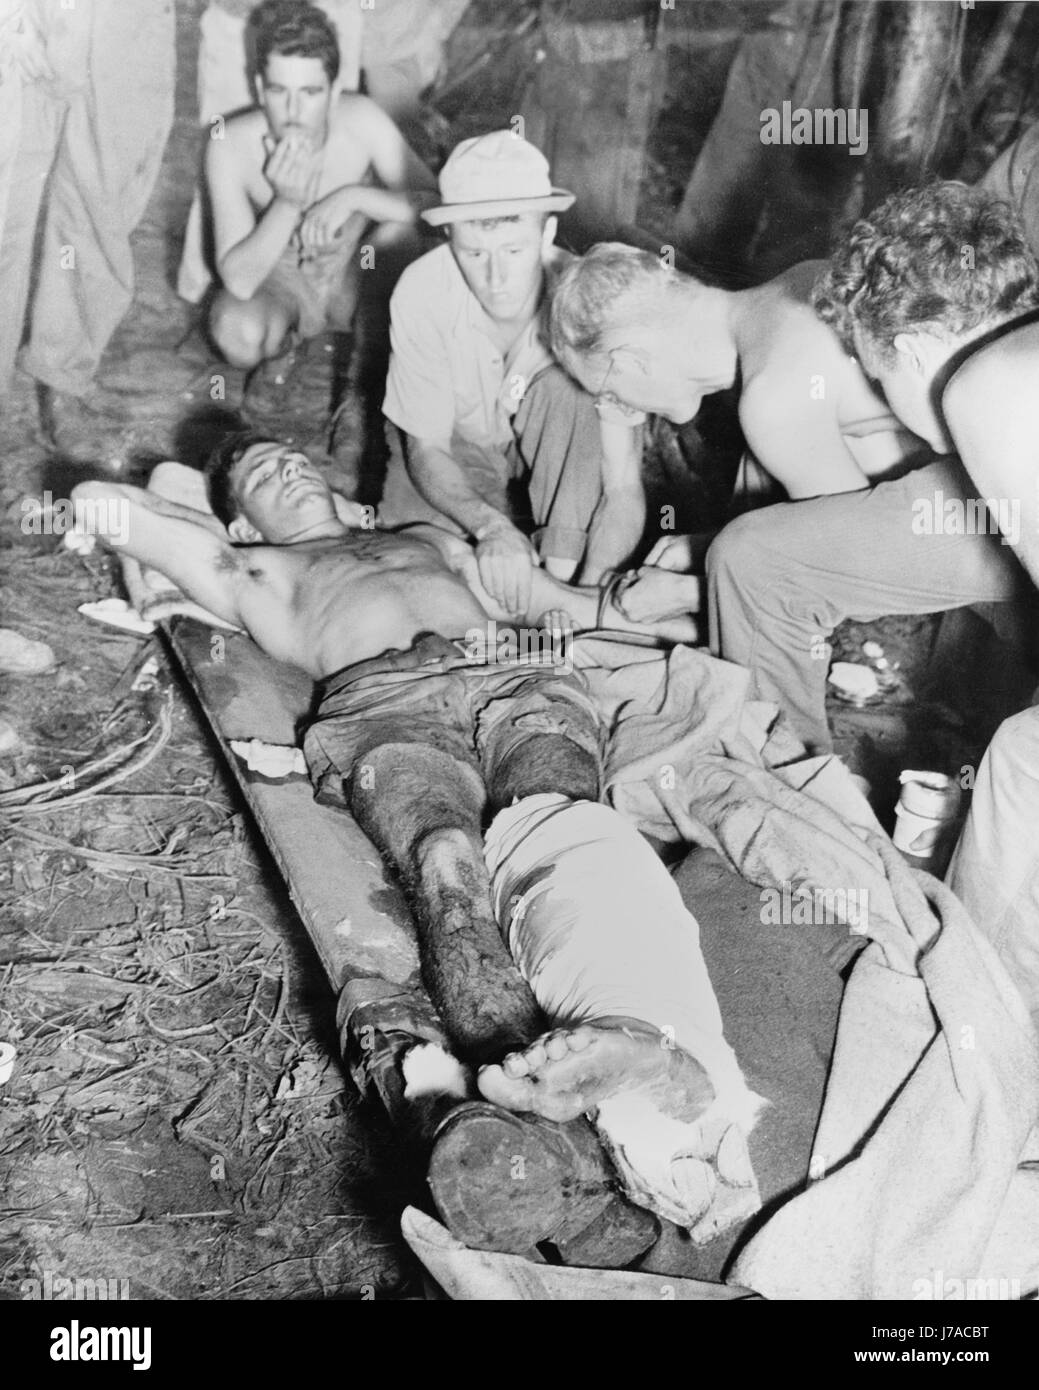 Un soldat américain blessé reçoit une transfusion de sang, Nouvelle Guinée, vers 1942-1945. Banque D'Images